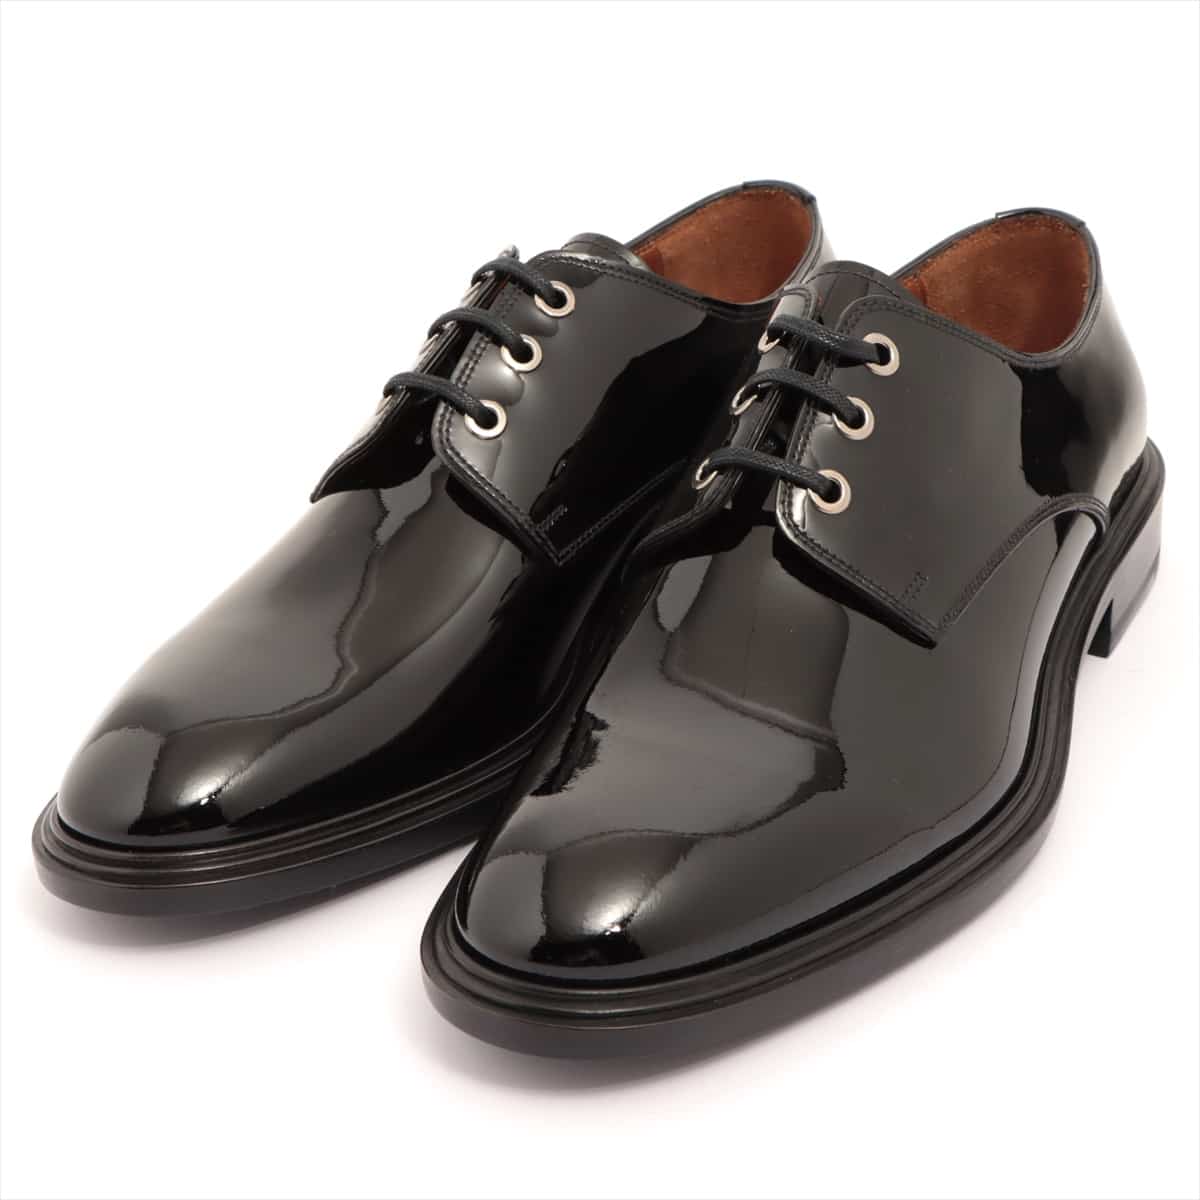 Givenchy Patent leather Dress shoes 41 Men's Black BM8050